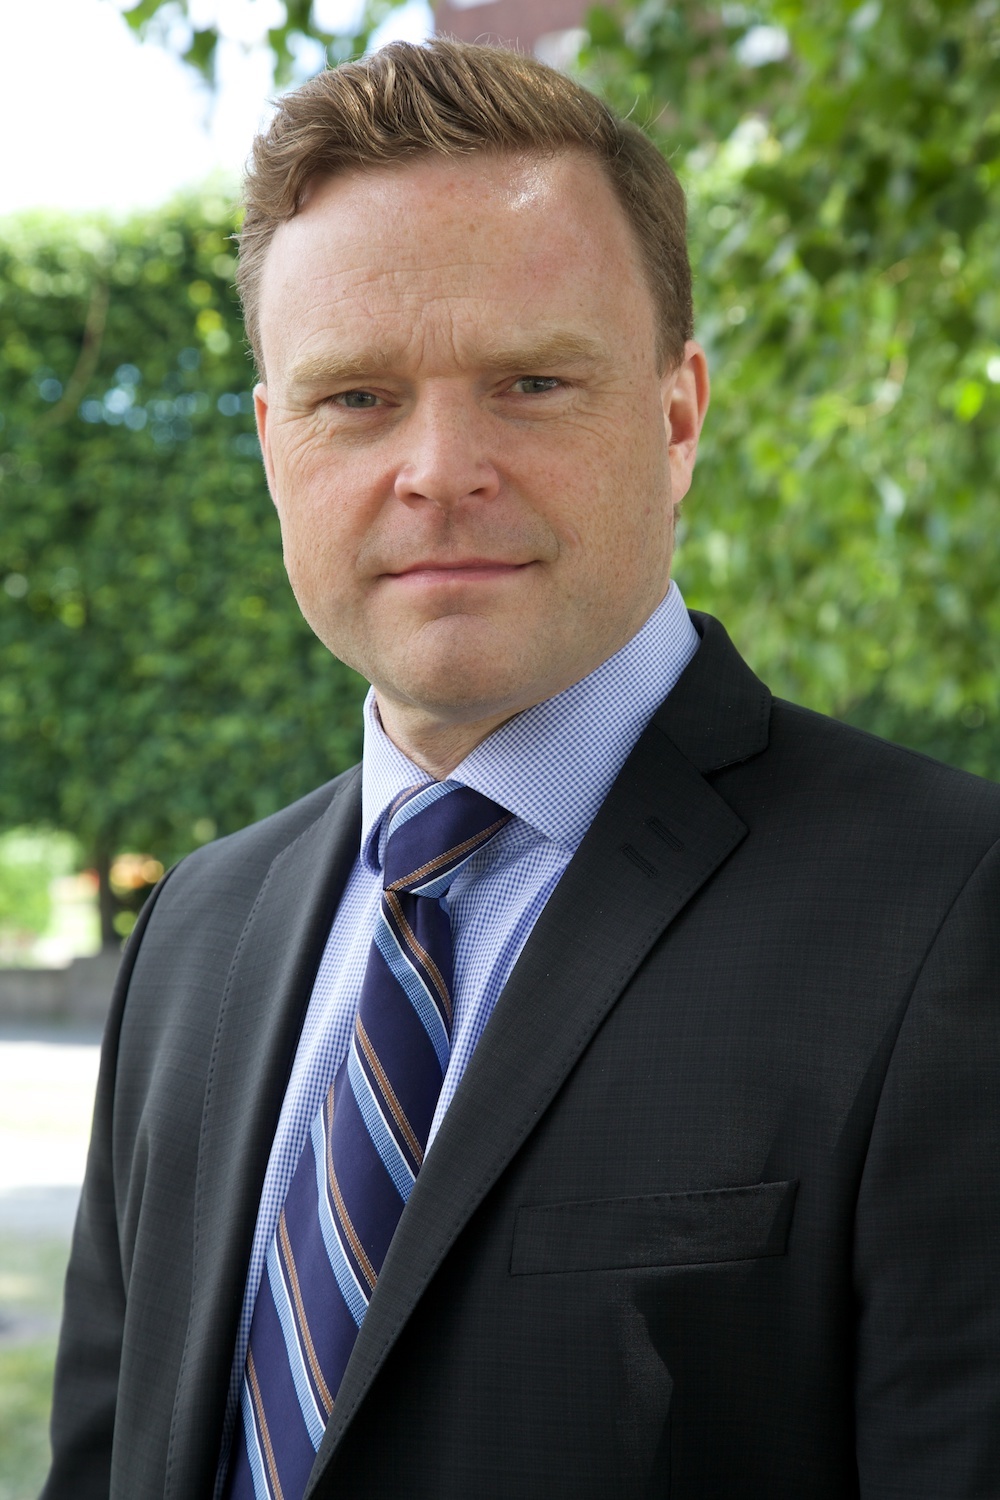 Thor B. Mosaker, regiondirektør for Norge og Tyskland i IP-konsulentfirmaet Zacco